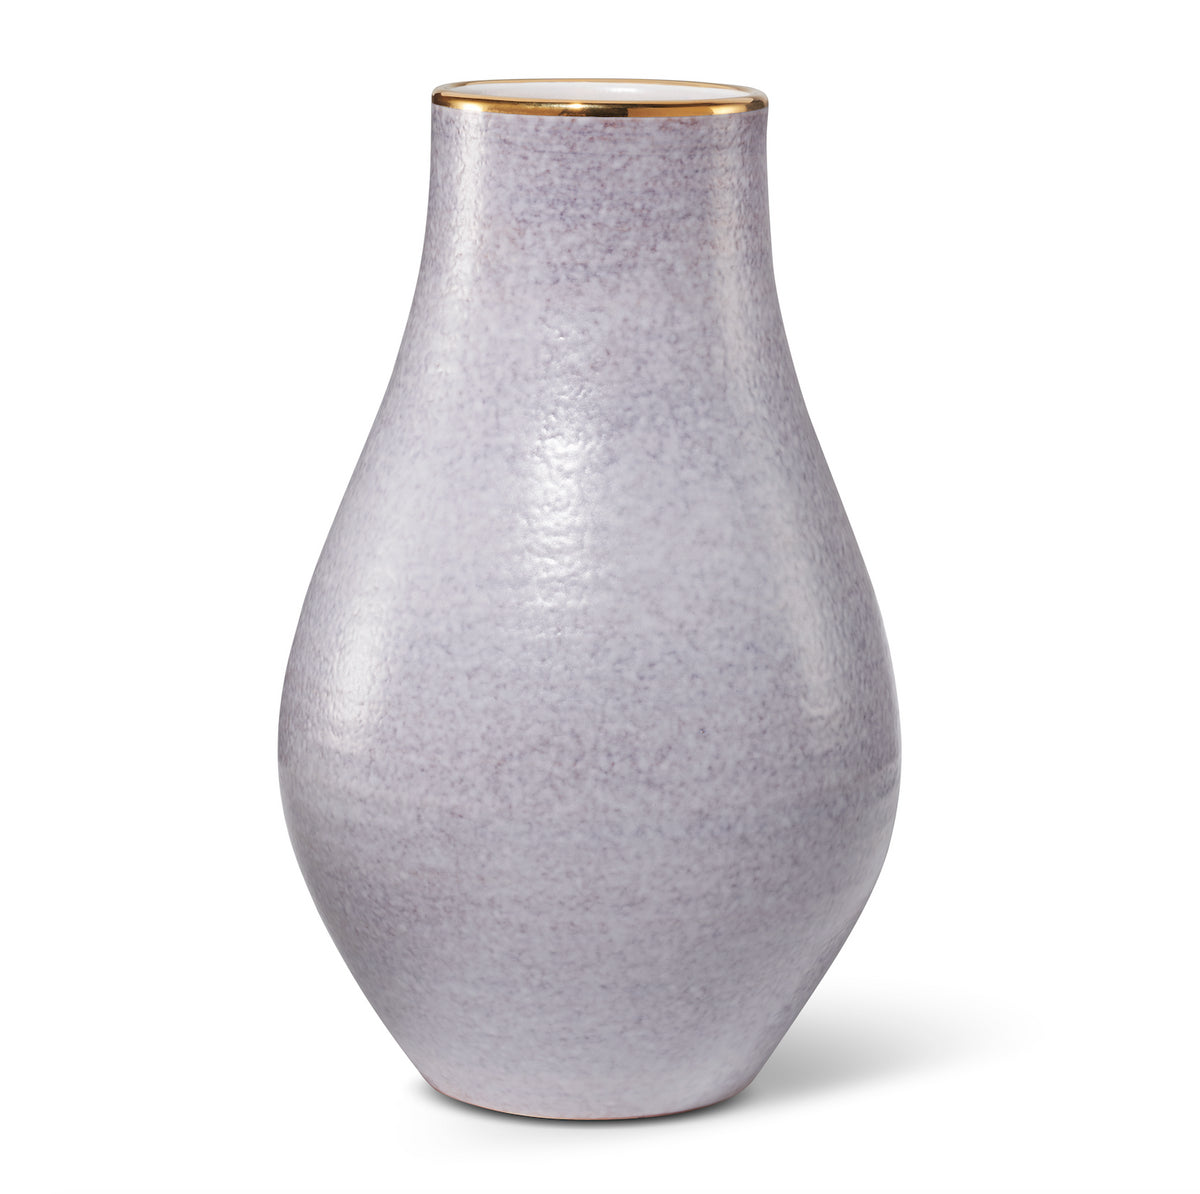 Romina Vase in Lavender Haze